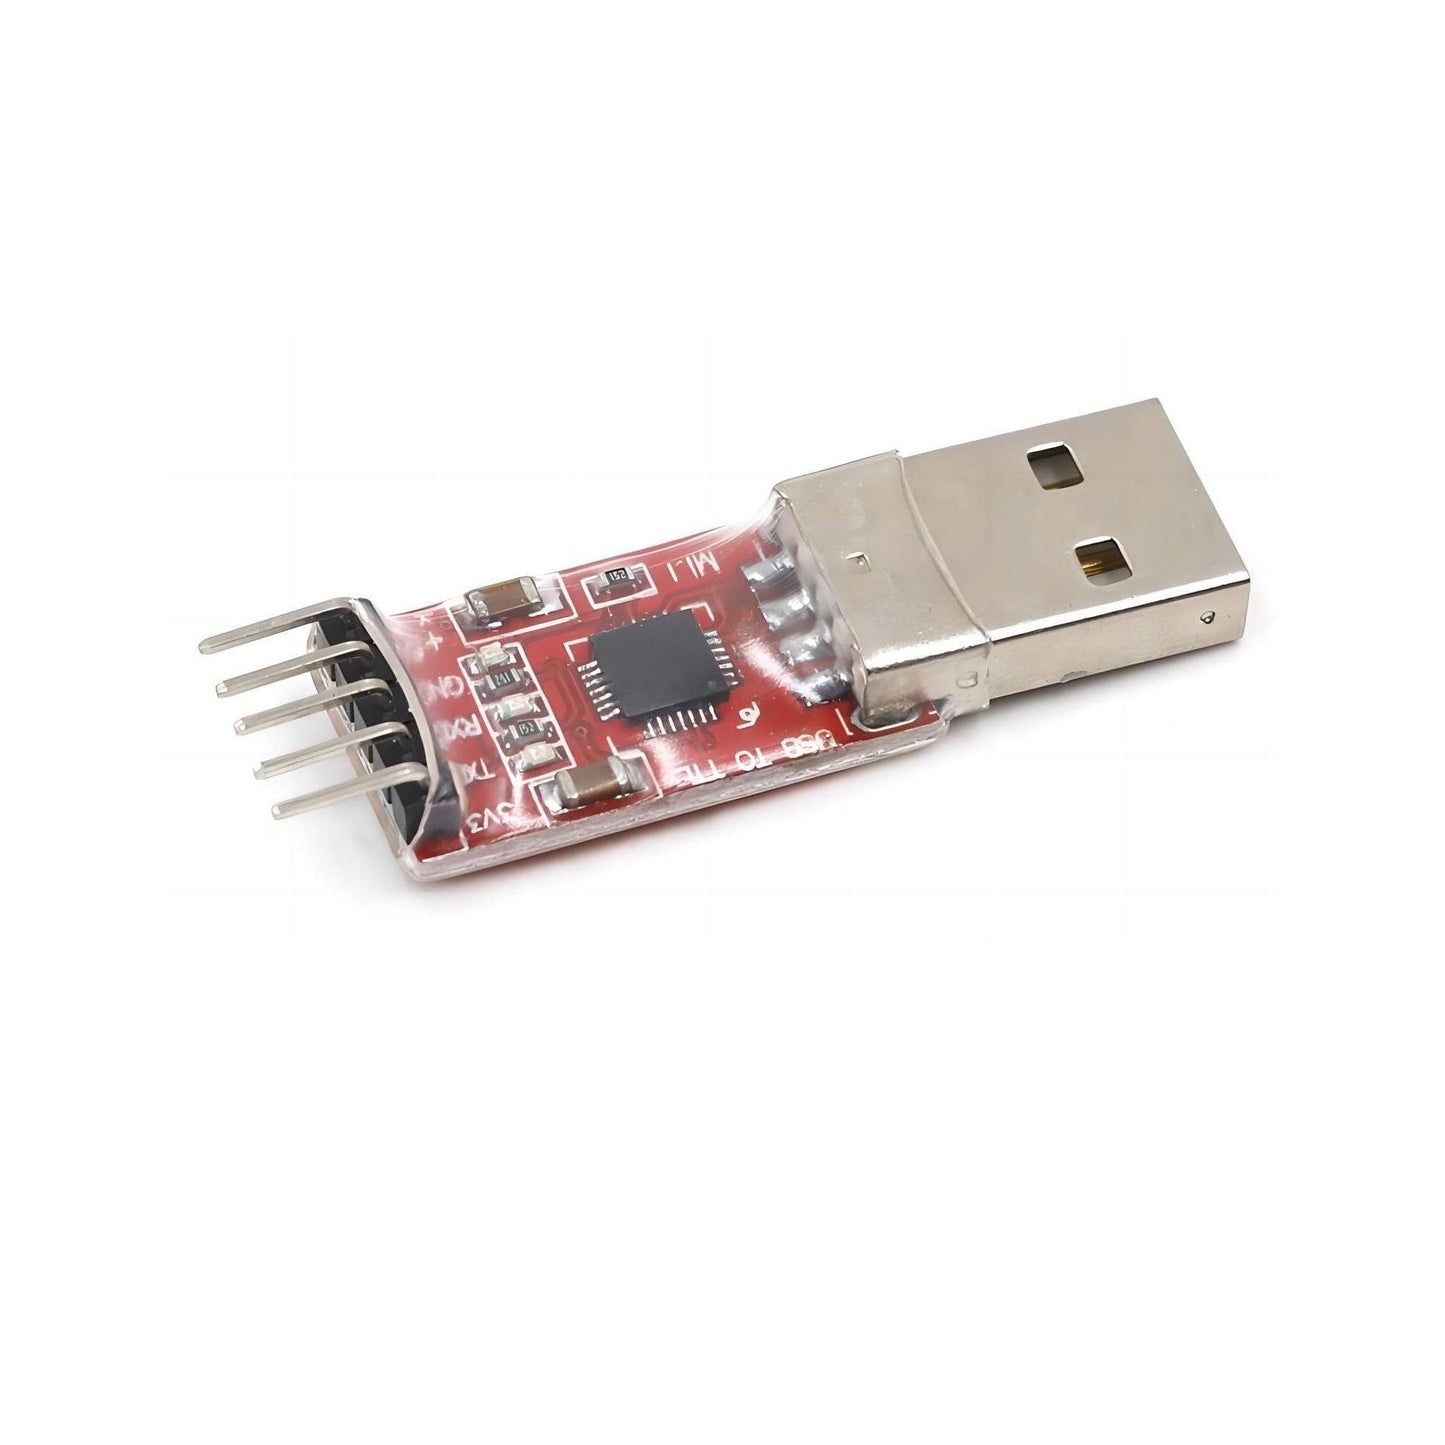 CP2102 USB To TTL Converter 3.3V / 5V Compatible